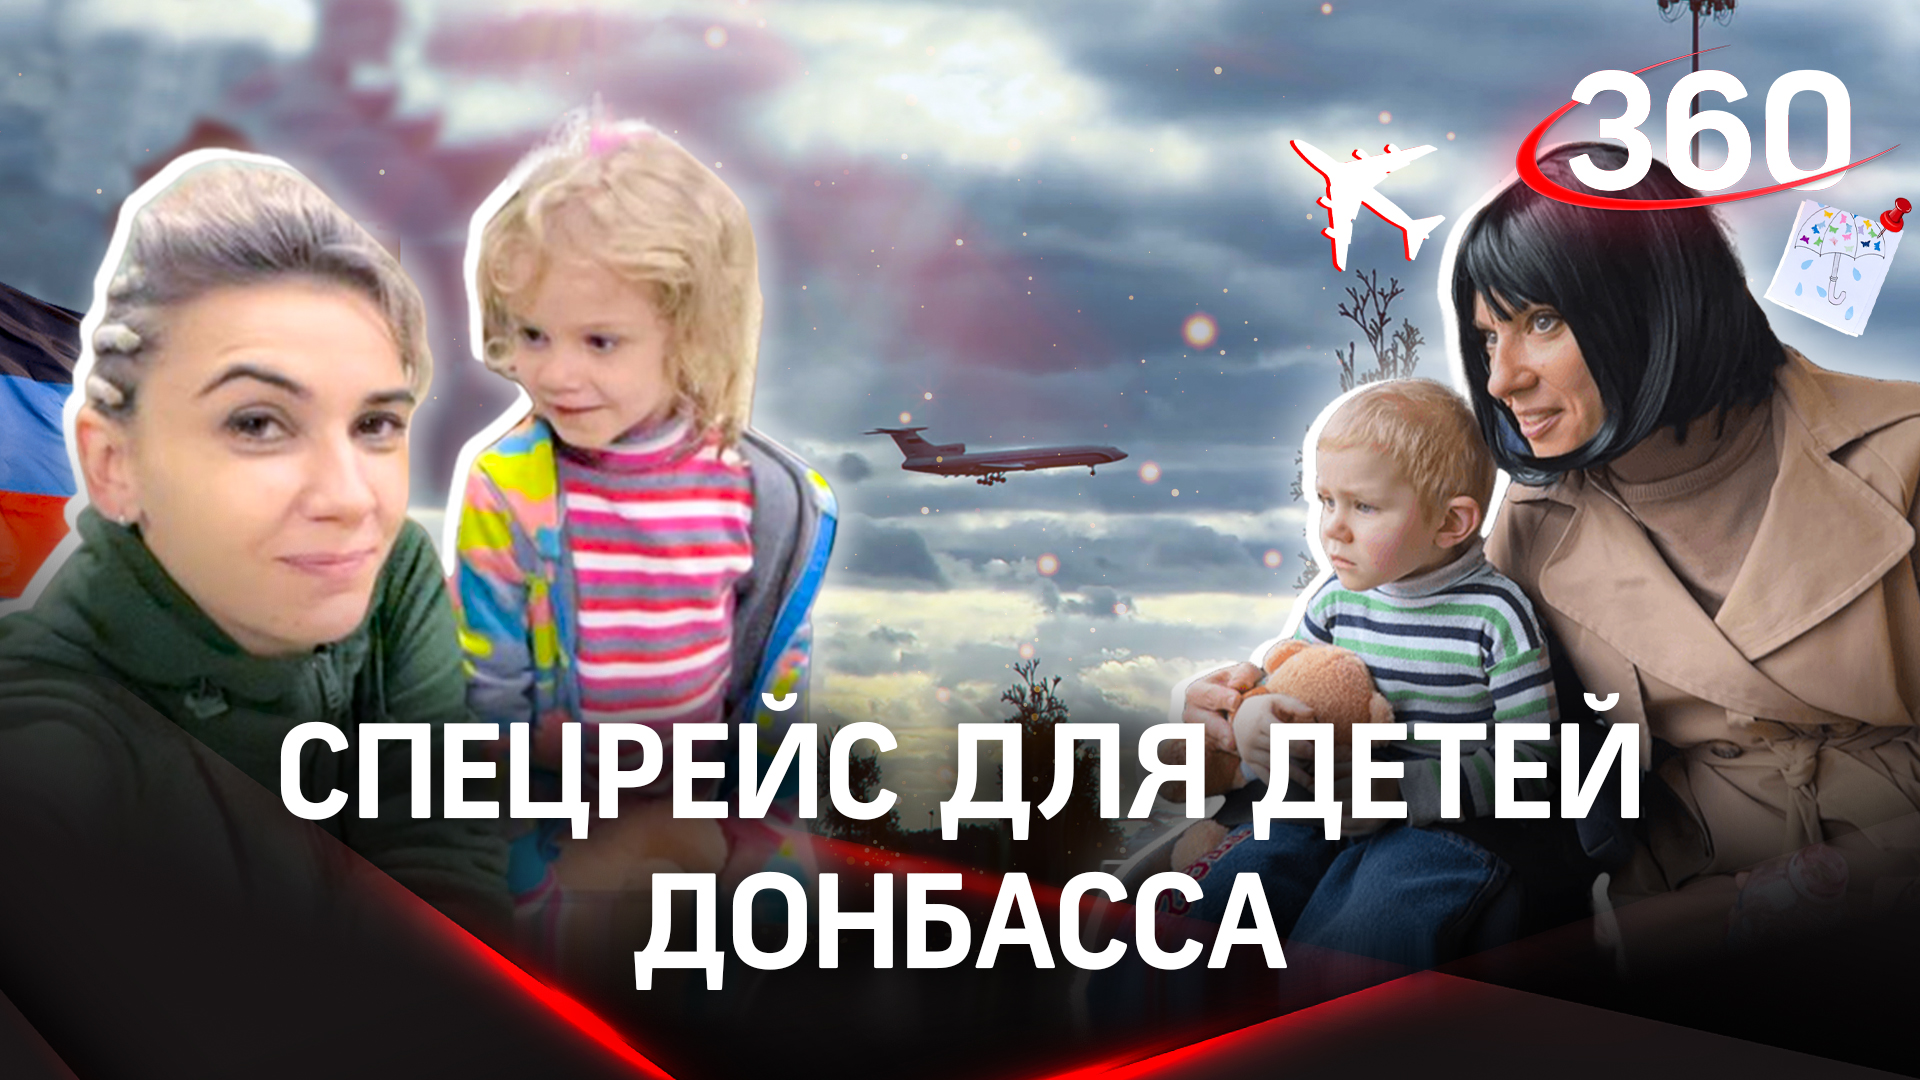 Первый полёт. История спецрейса для детей Донбасса